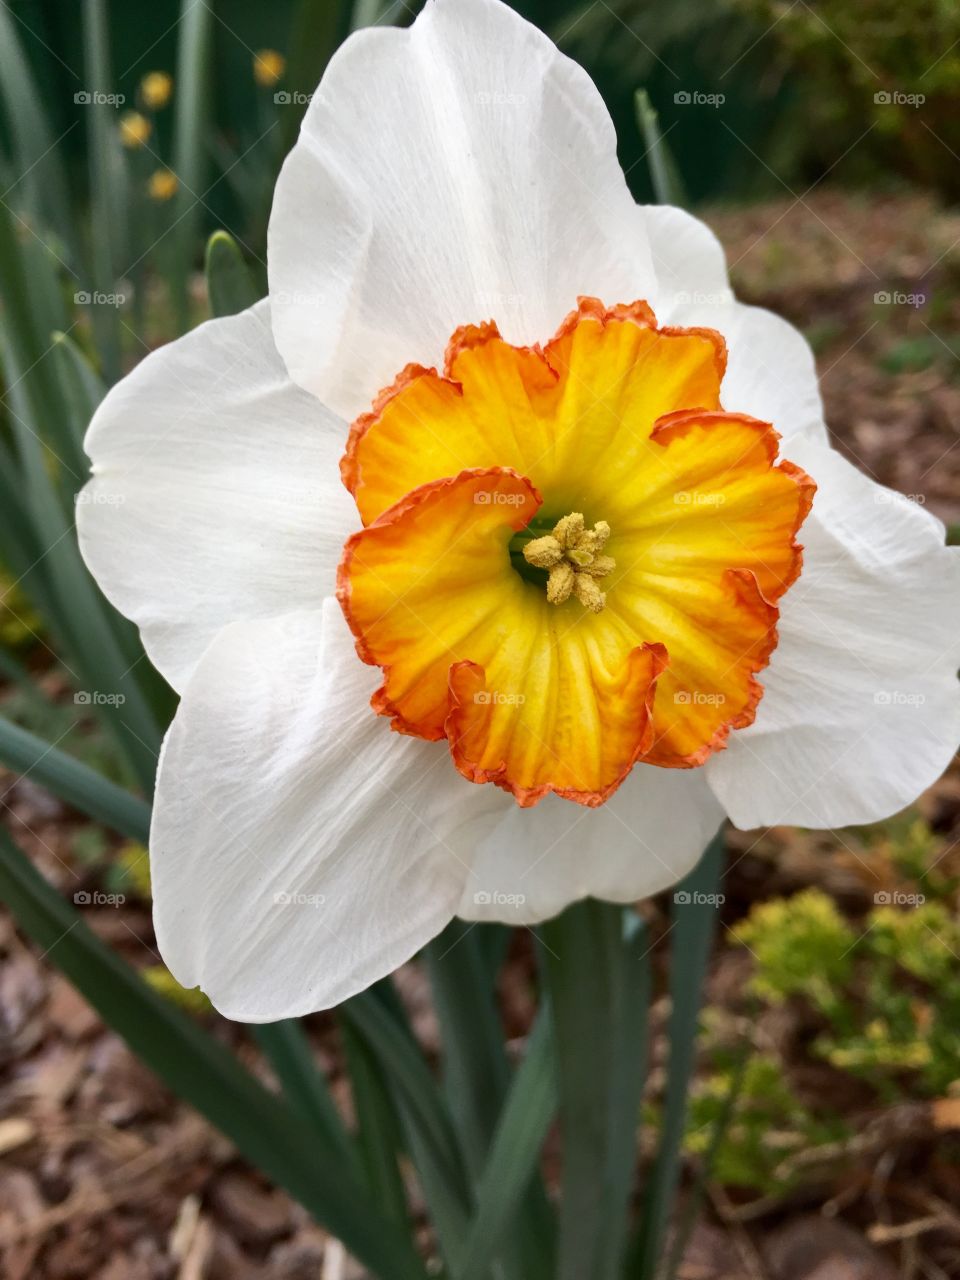 Narcissus closeup